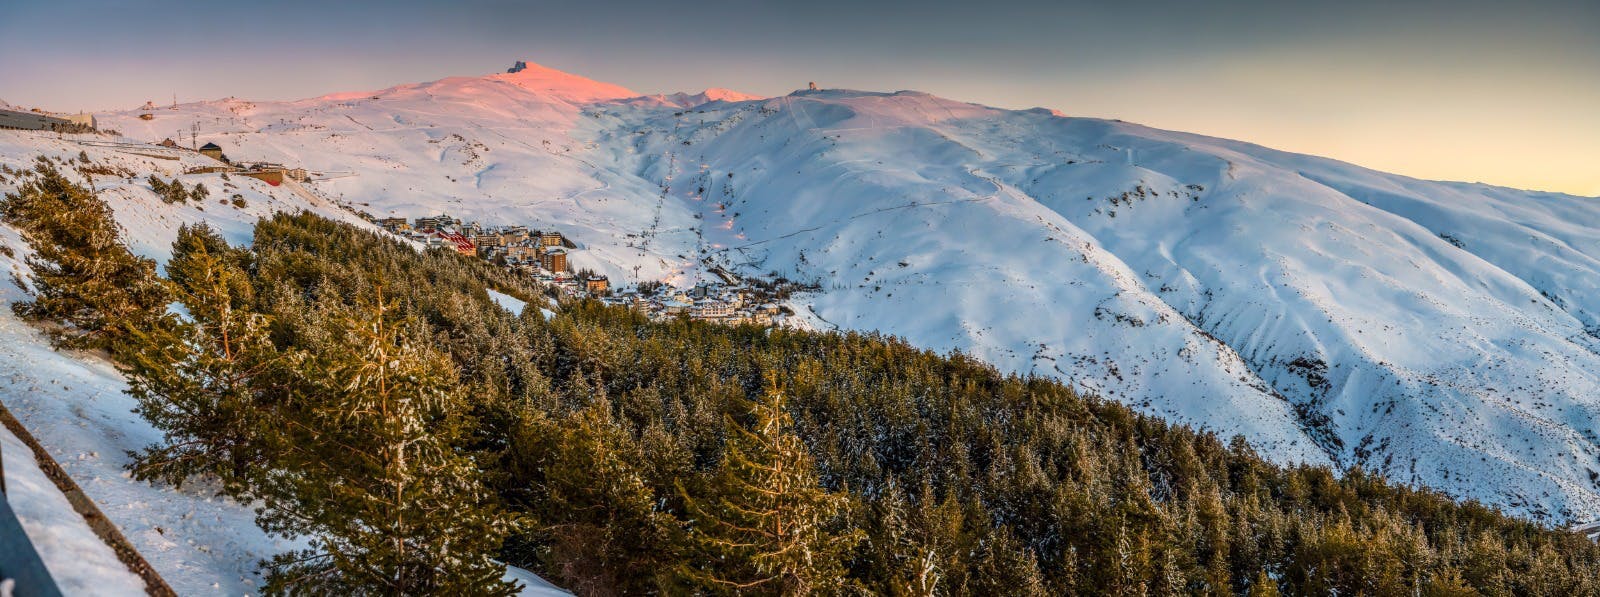 Image 31 of PepeMarinSN9 2 in Cosentino, Official Sponsor of Sierra Nevada's Ski Resort - Cosentino